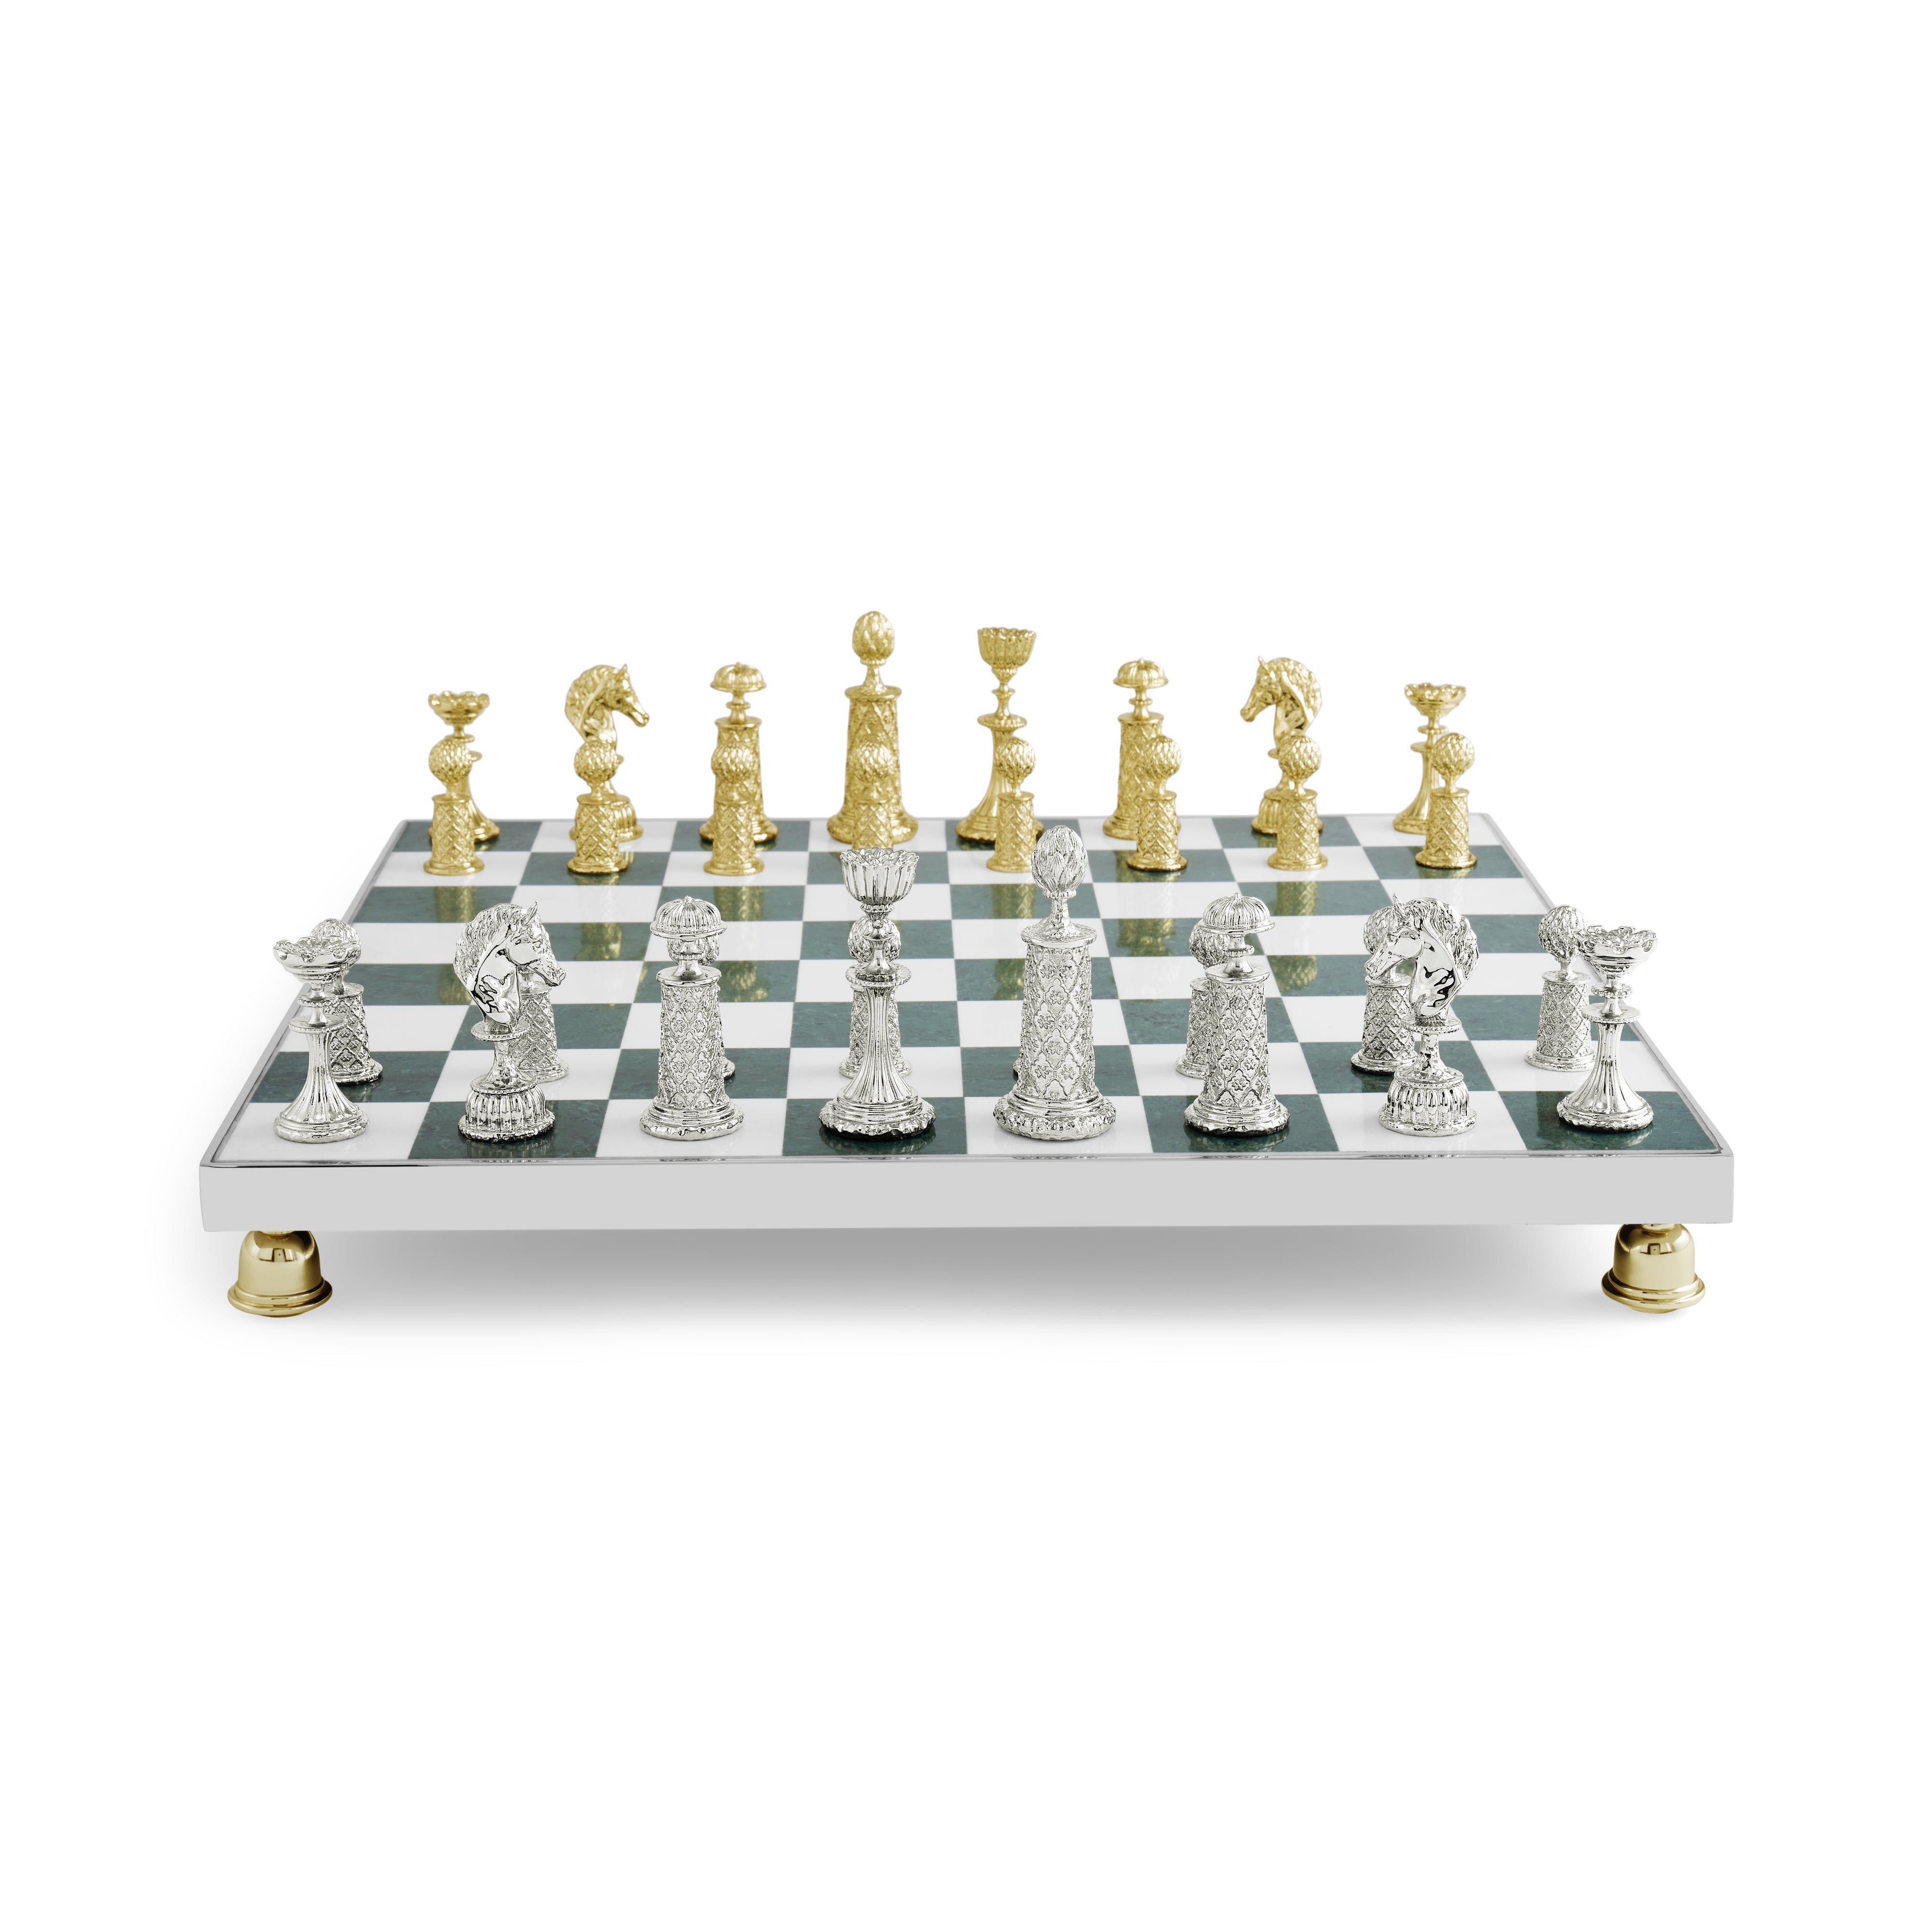 Palace Chess Set – Michael Aram